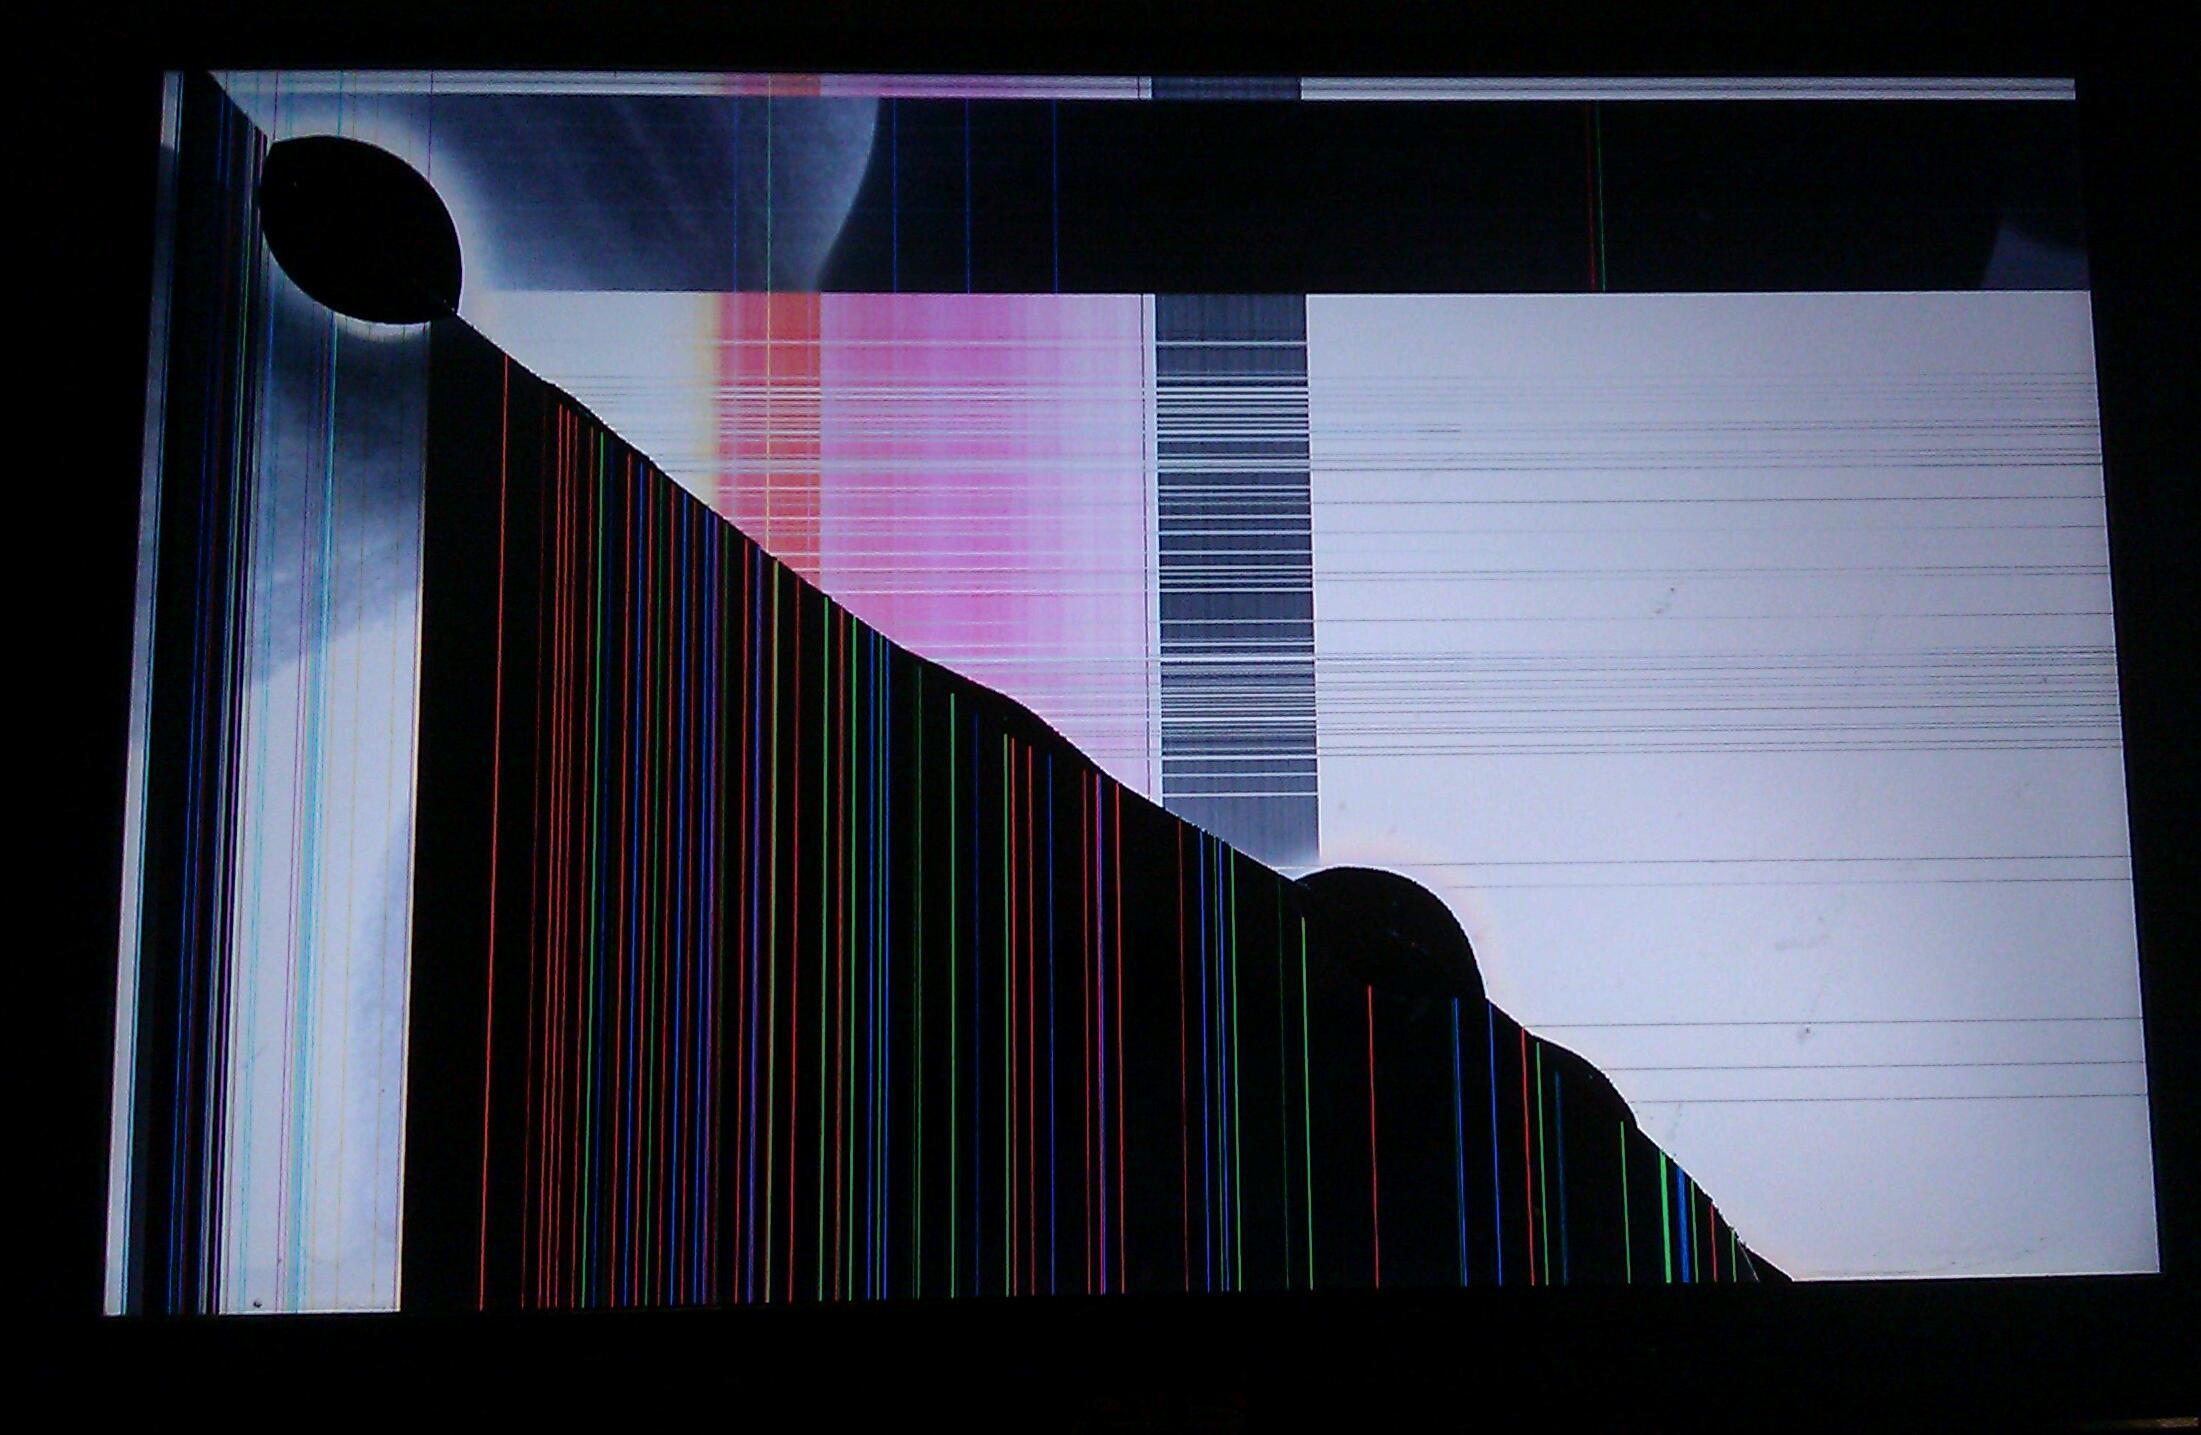 2201x1435 Hình nền iPhone bị vỡ màn hình - 2201x1435 - Tải xuống Hình nền HD - WallpaperTip